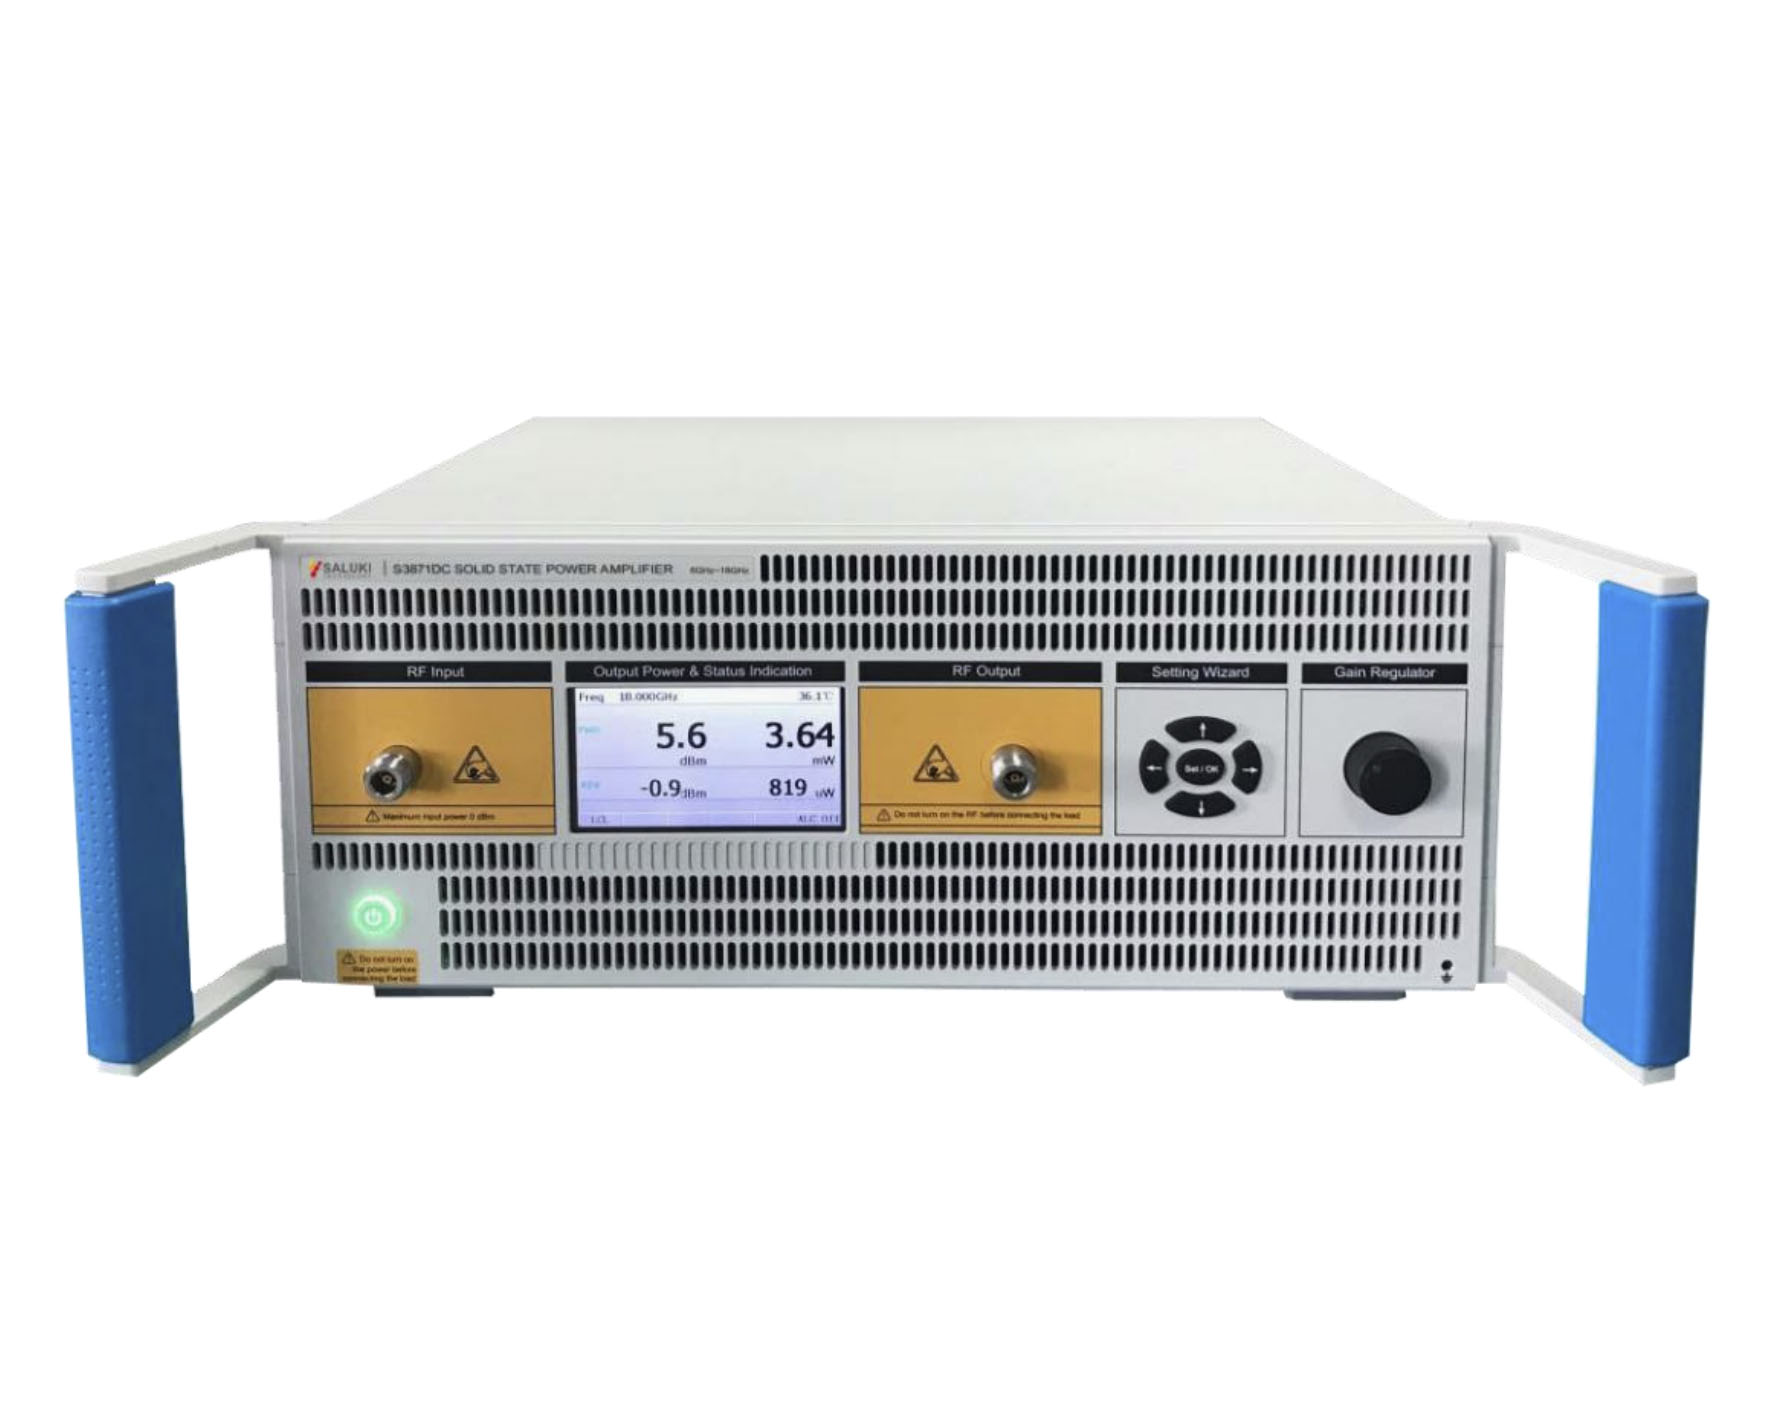 Твердотельные усилители мощностиSaluki серии S3871с диапазоном частот от 9 кГц до 60 ГГц